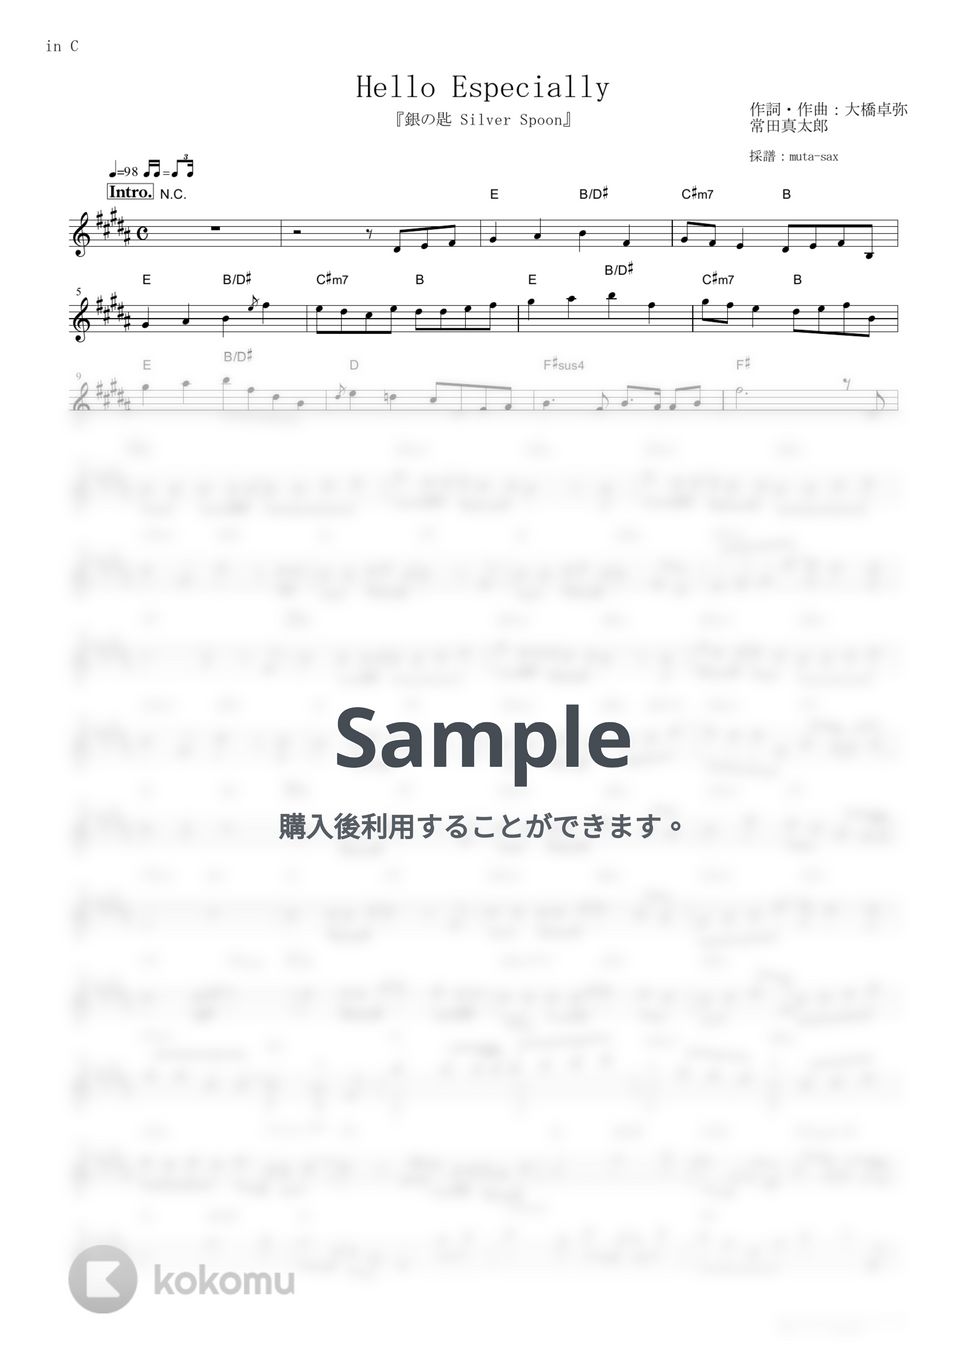 スキマスイッチ - Hello Especially (『銀の匙 Silver Spoon』 / in C) by muta-sax